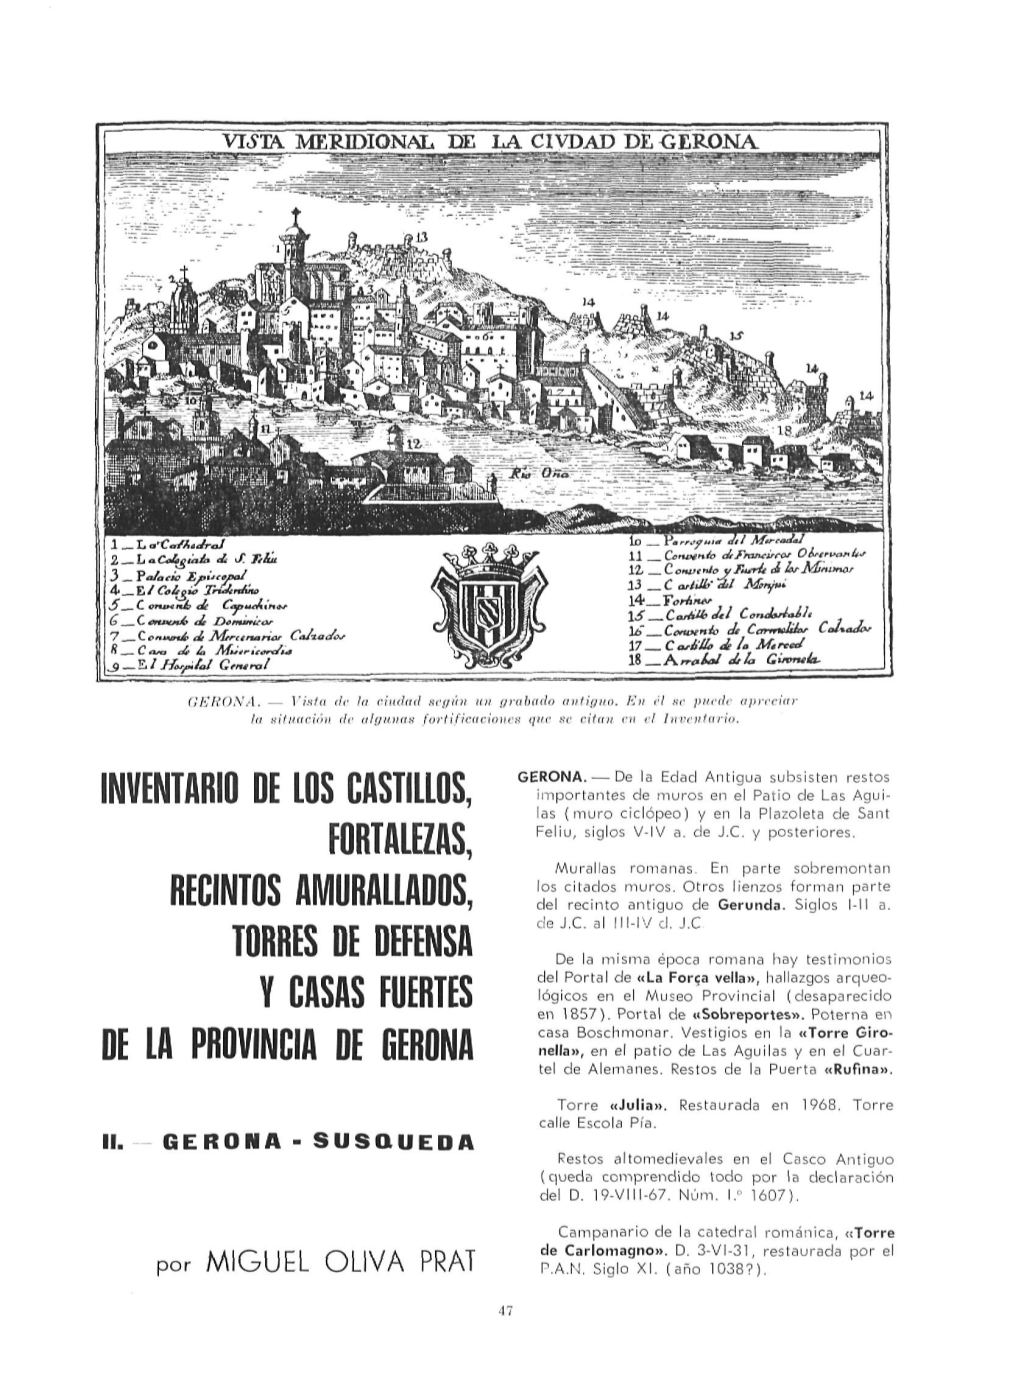 Inventario De Los Castillos, Fortalezas, Recintos